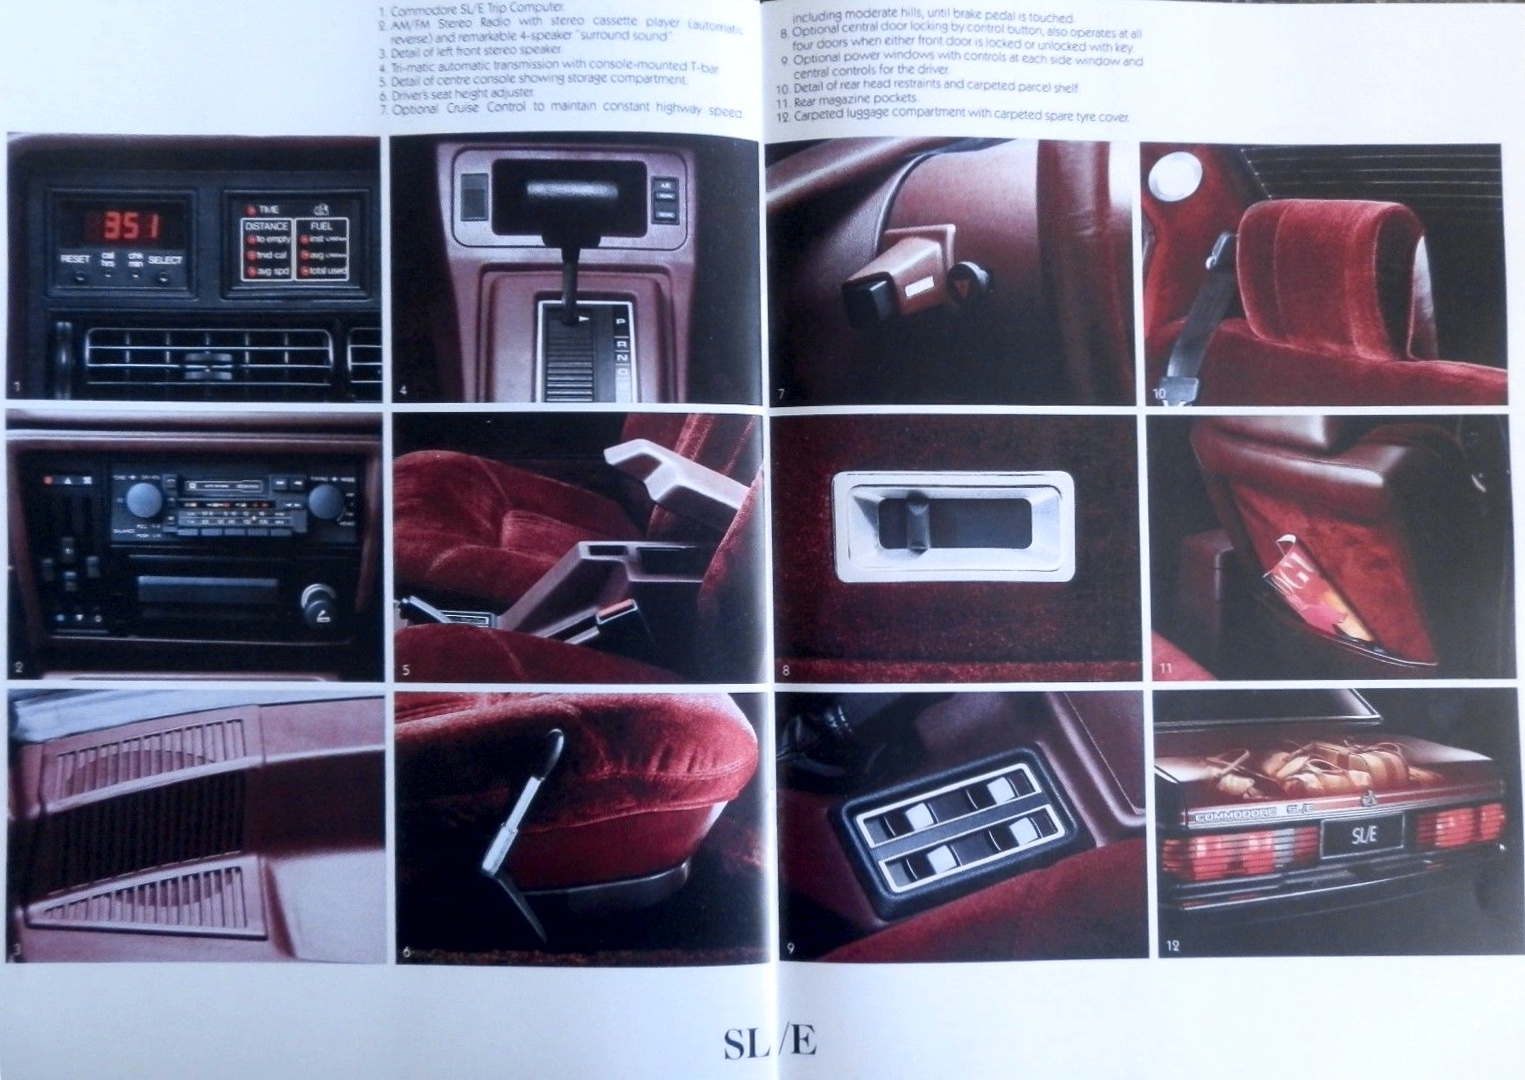 1981 Holden Commodore VH SL/E Brochure Page 5